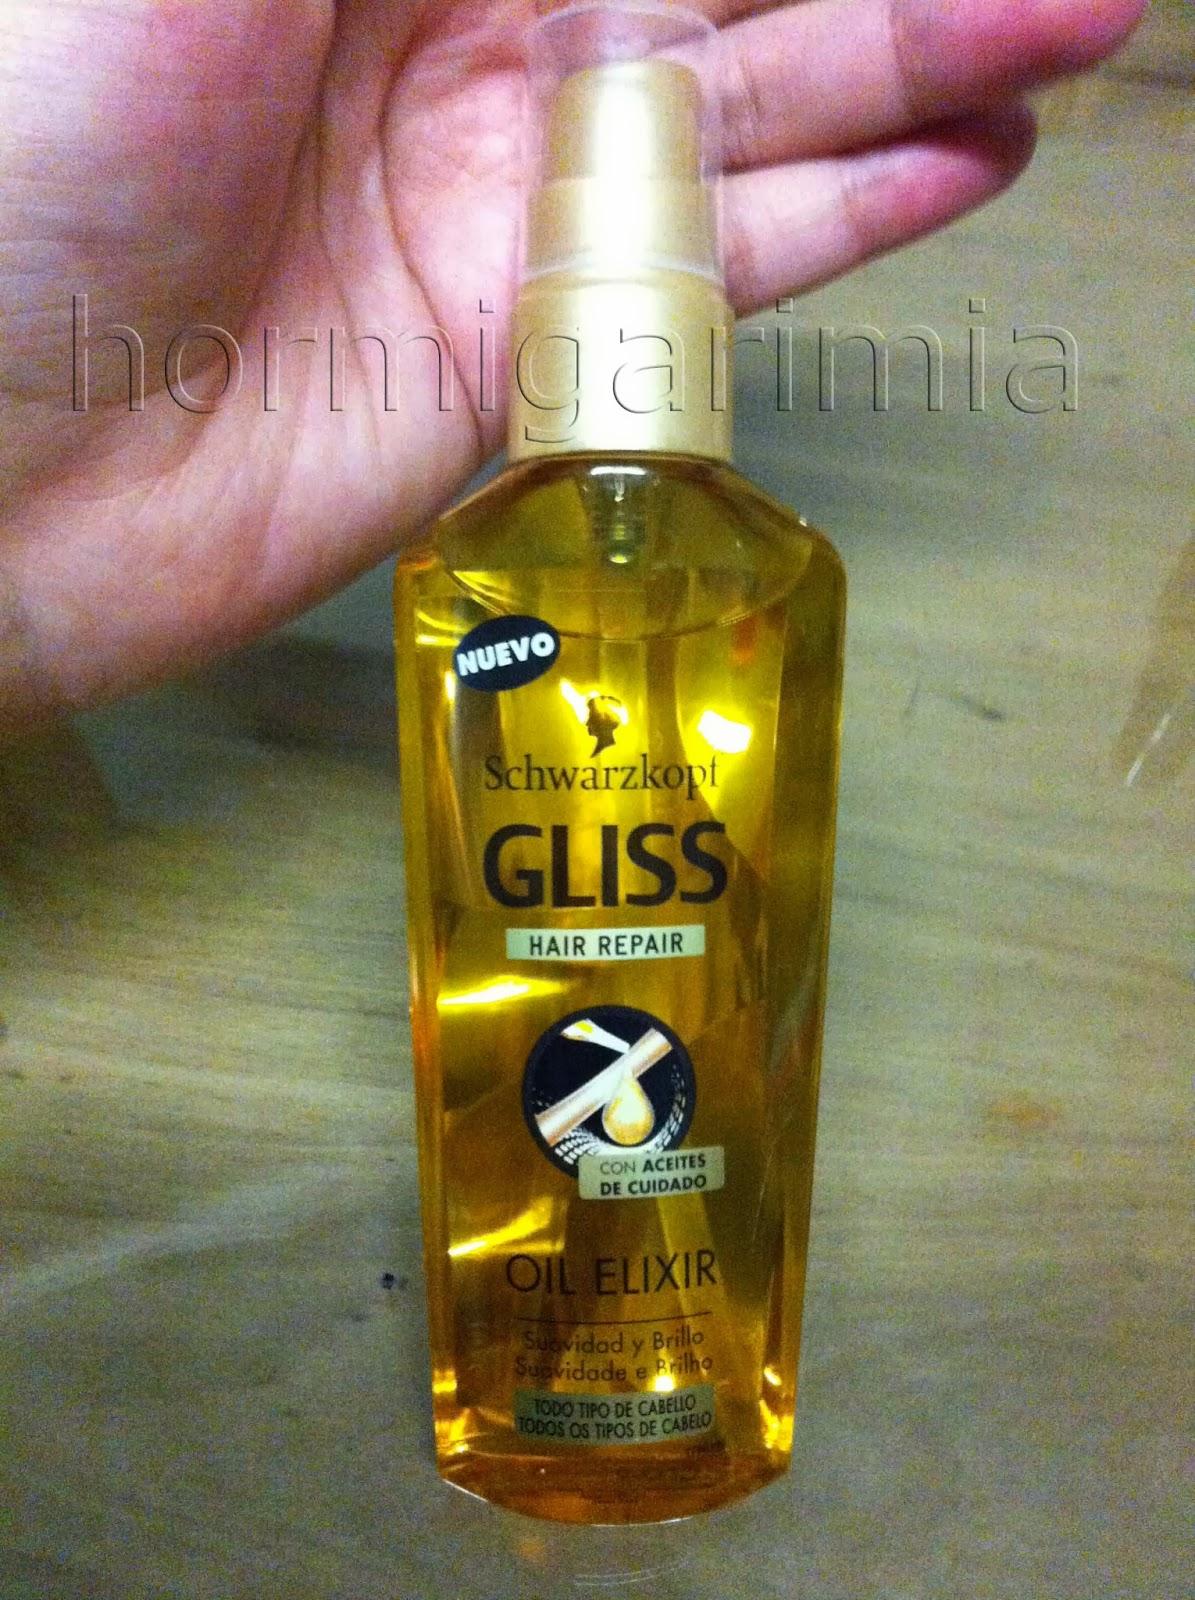 Serum ligero ultimate & oil elixir. Hair Repair Gliss Schwarzkopf